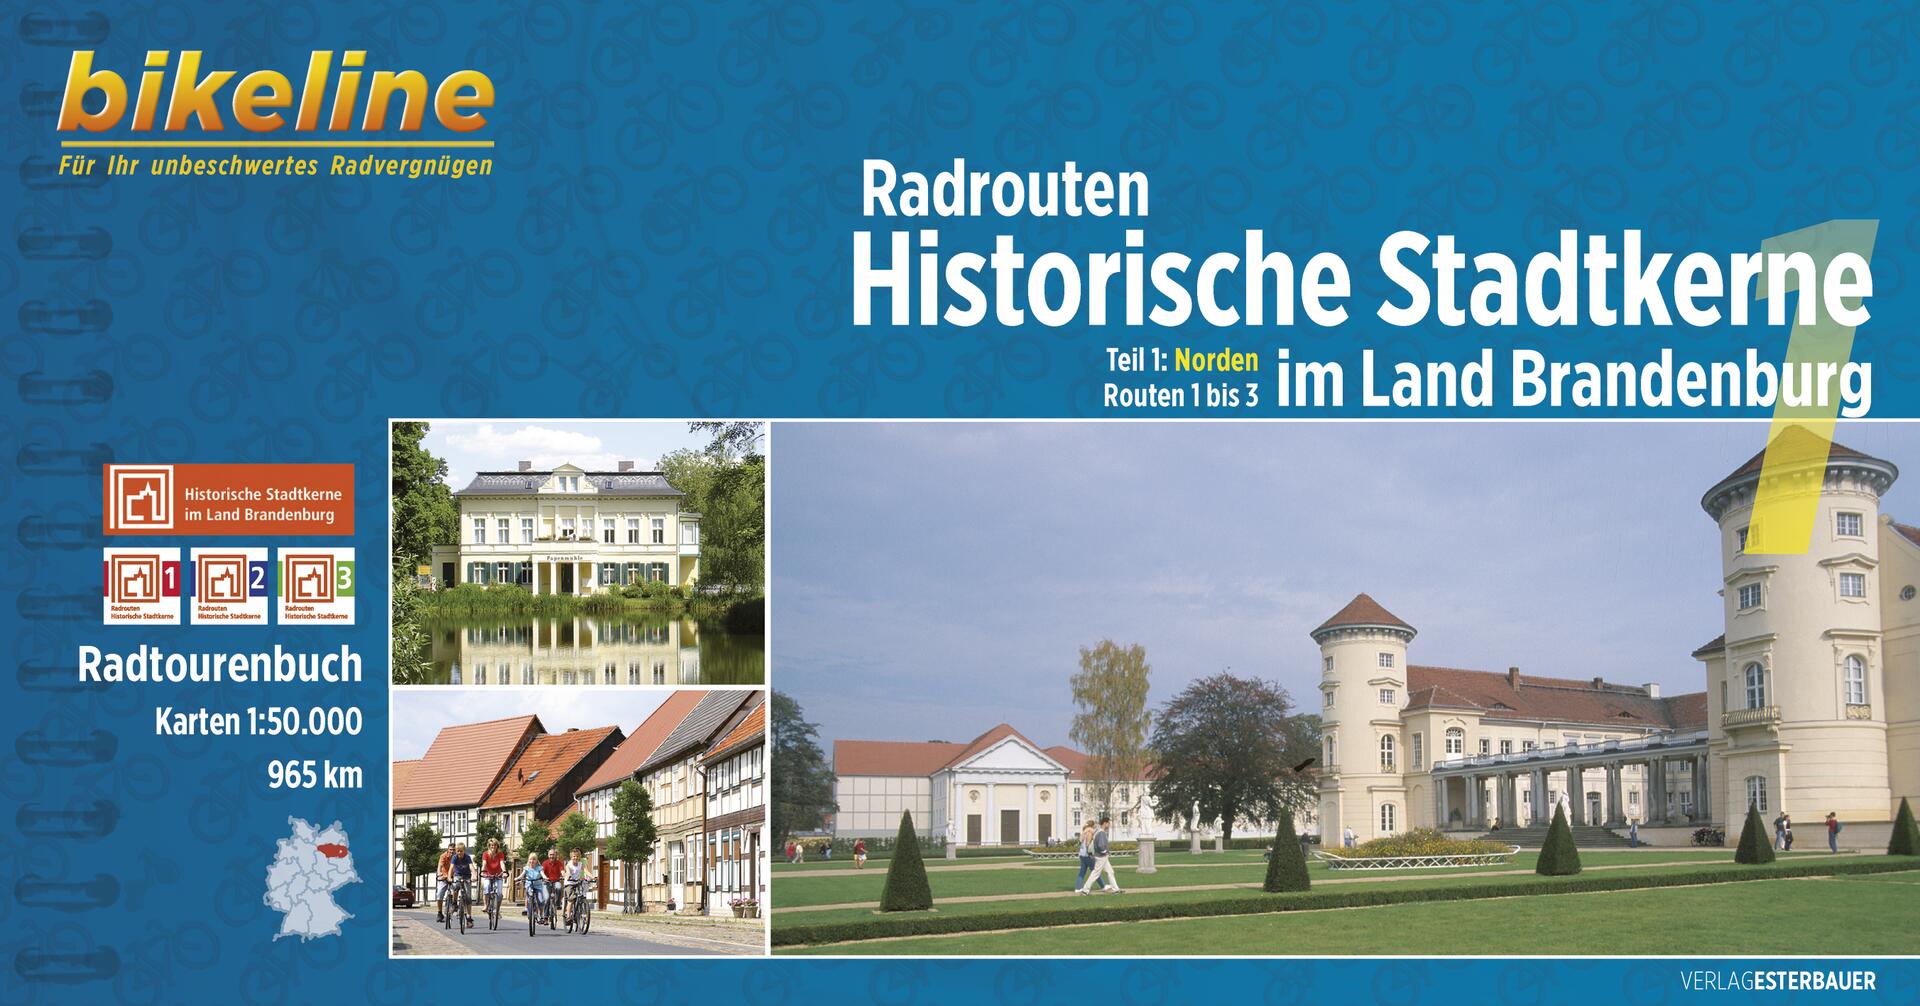 Foto vom Radrouten Historische Stadtkerne im Land Brandenburg 1